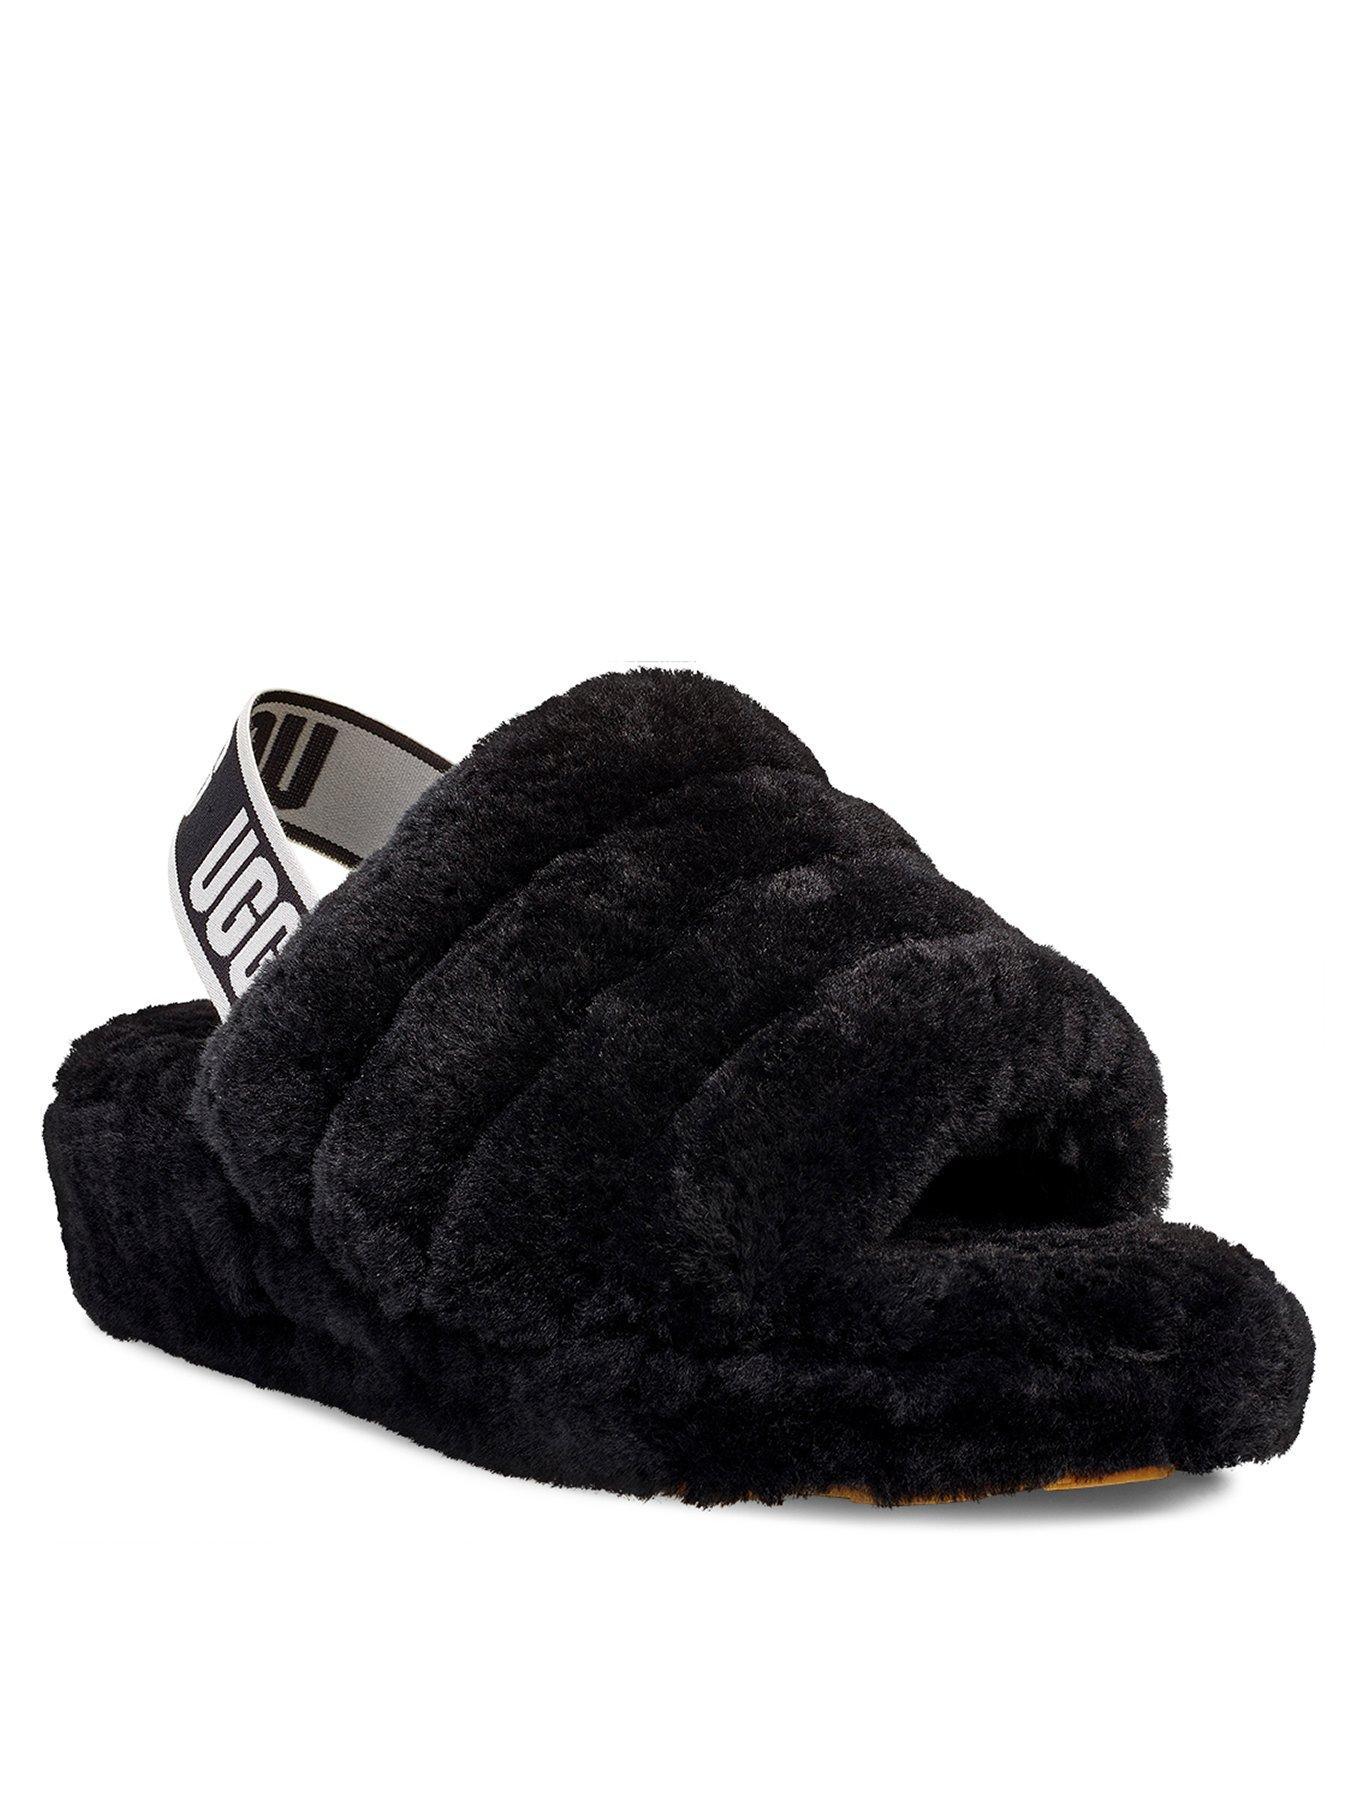 ugg slippers in black